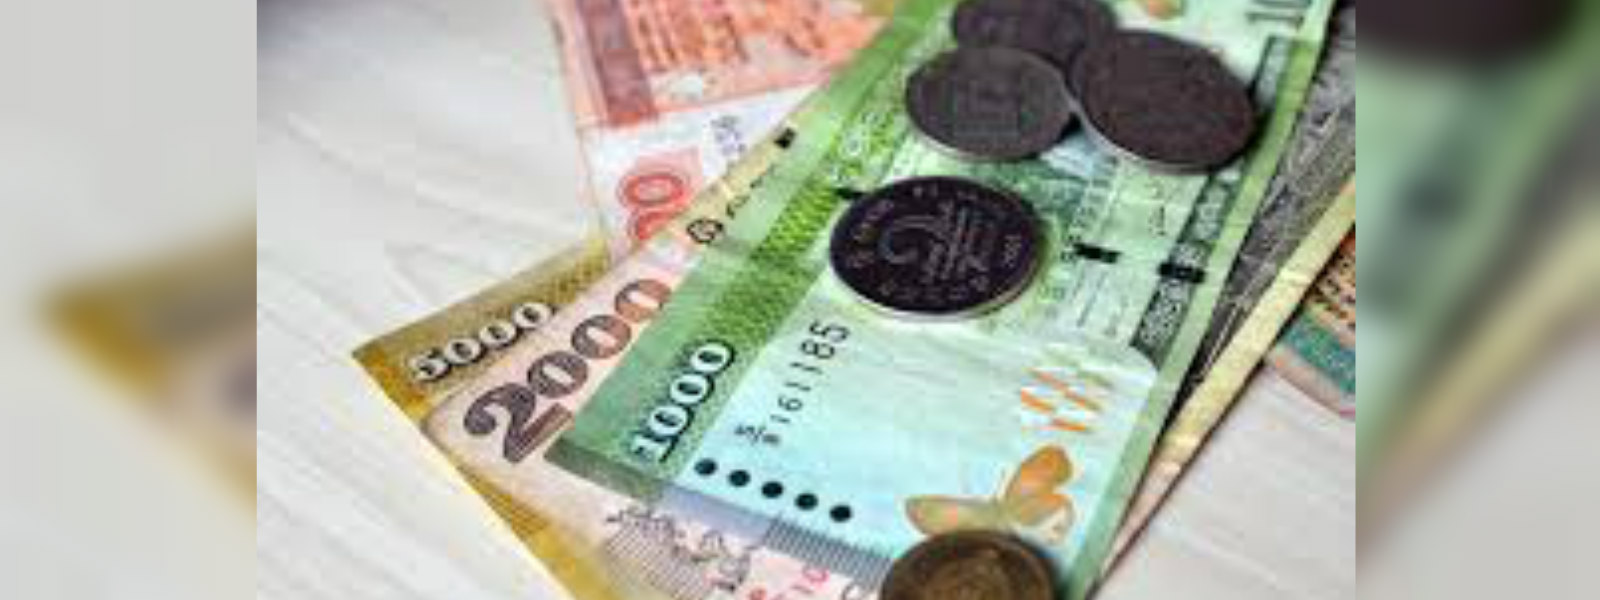 SL debt ratio rises 